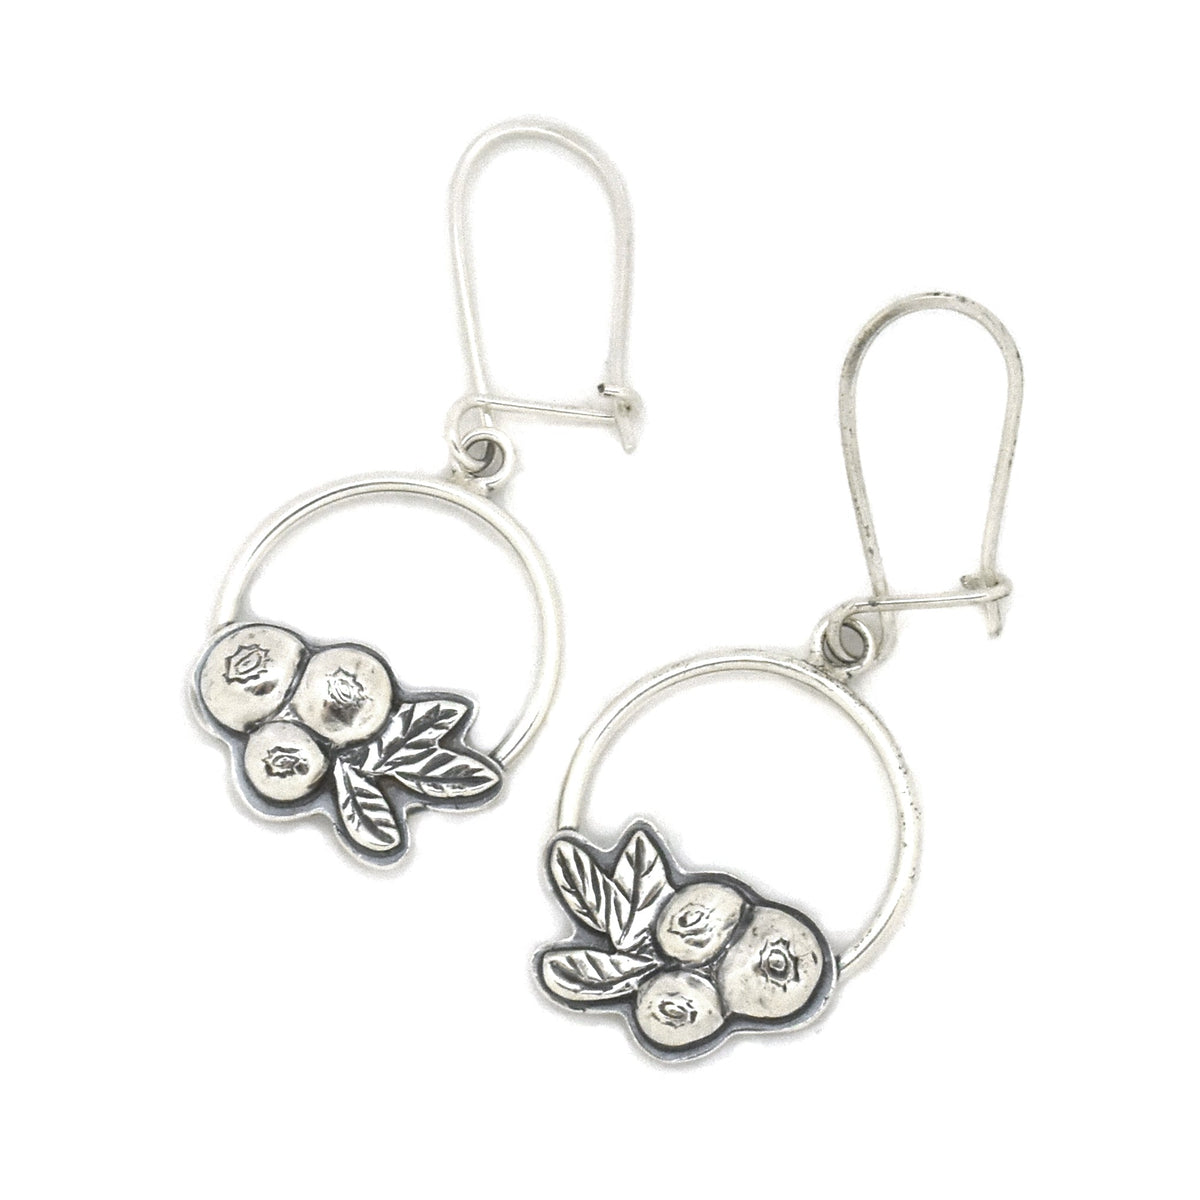 Wild Blueberry Hoop Earrings - Silver Earrings   6542 - handmade by Beth Millner Jewelry